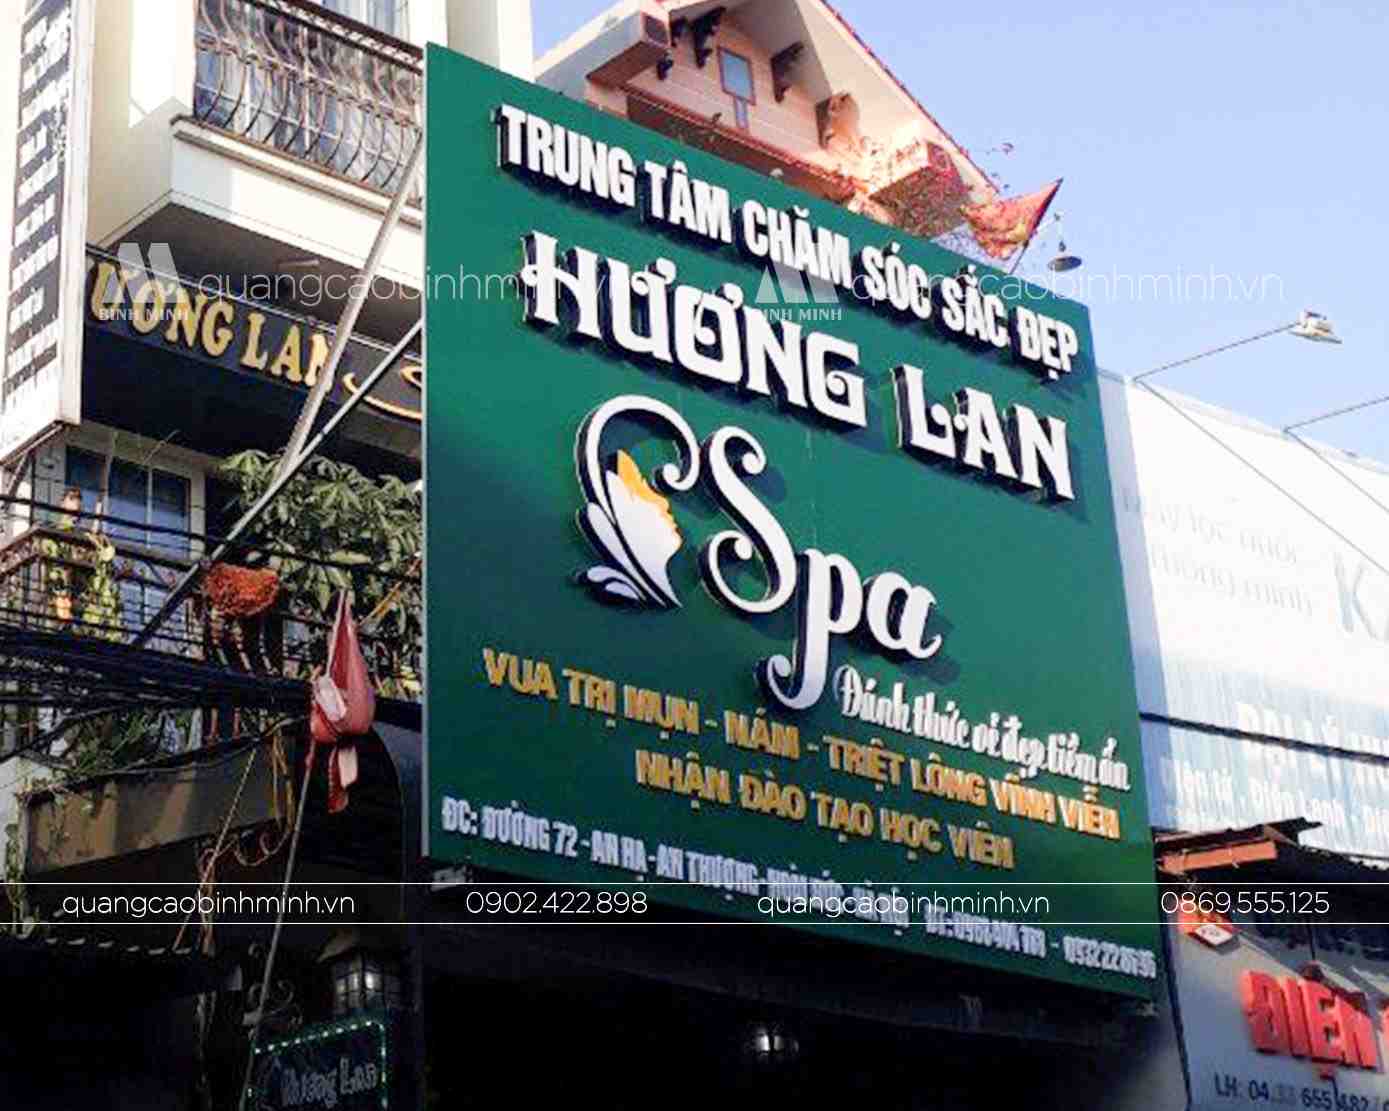 Biển quảng cáo spa Hương Lan